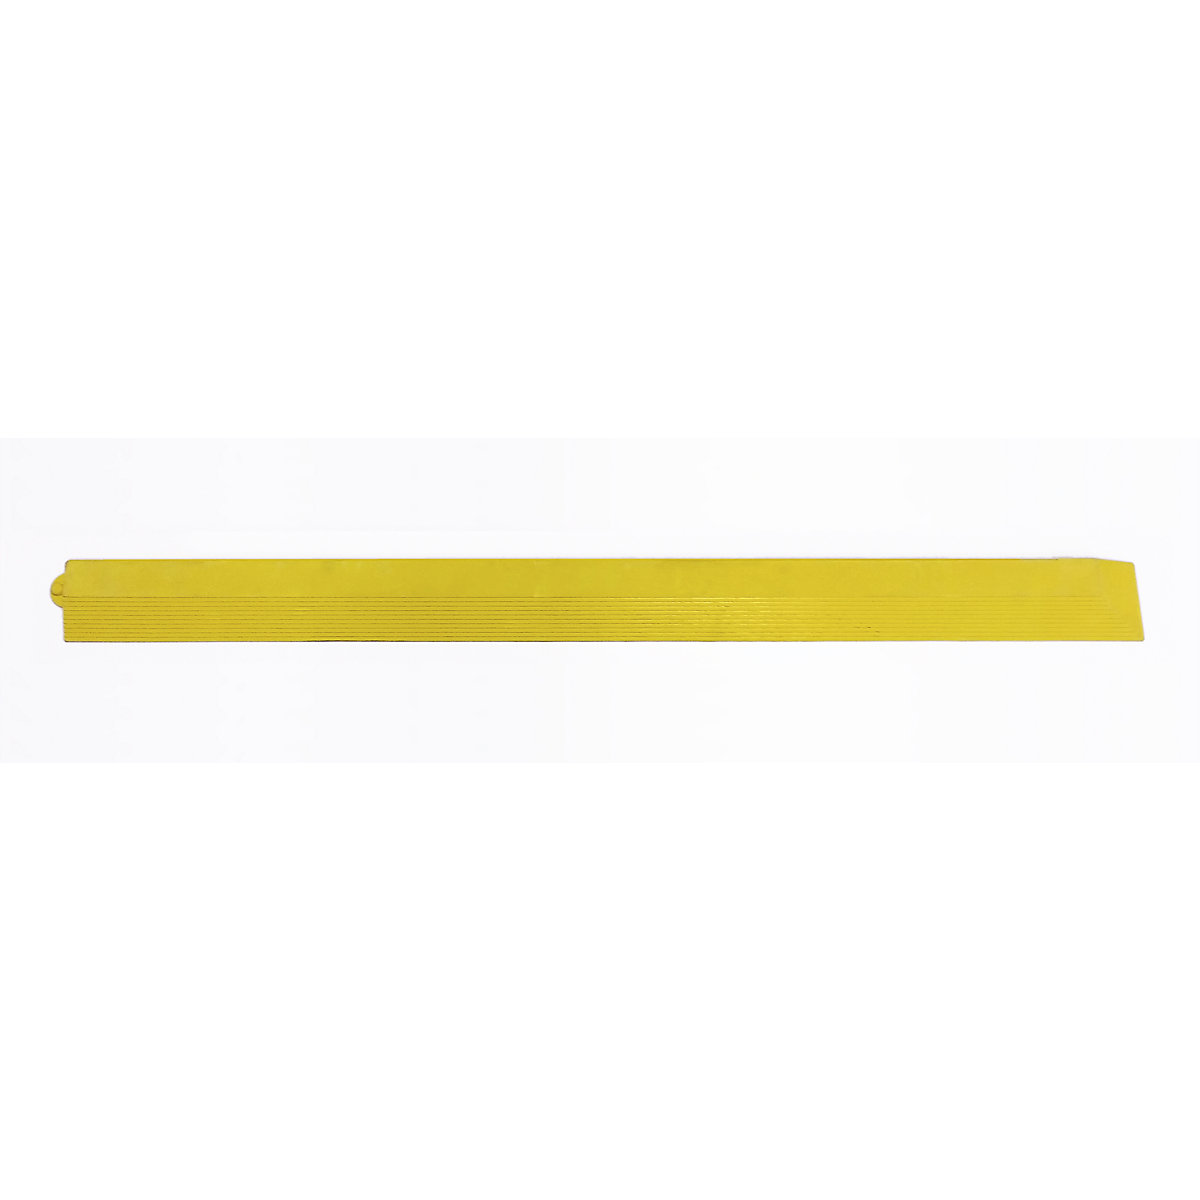 Rubna letvica NR, DxŠxV 965 x 65 x 17 mm, u žutoj boji, s kutom, ženska izvedba